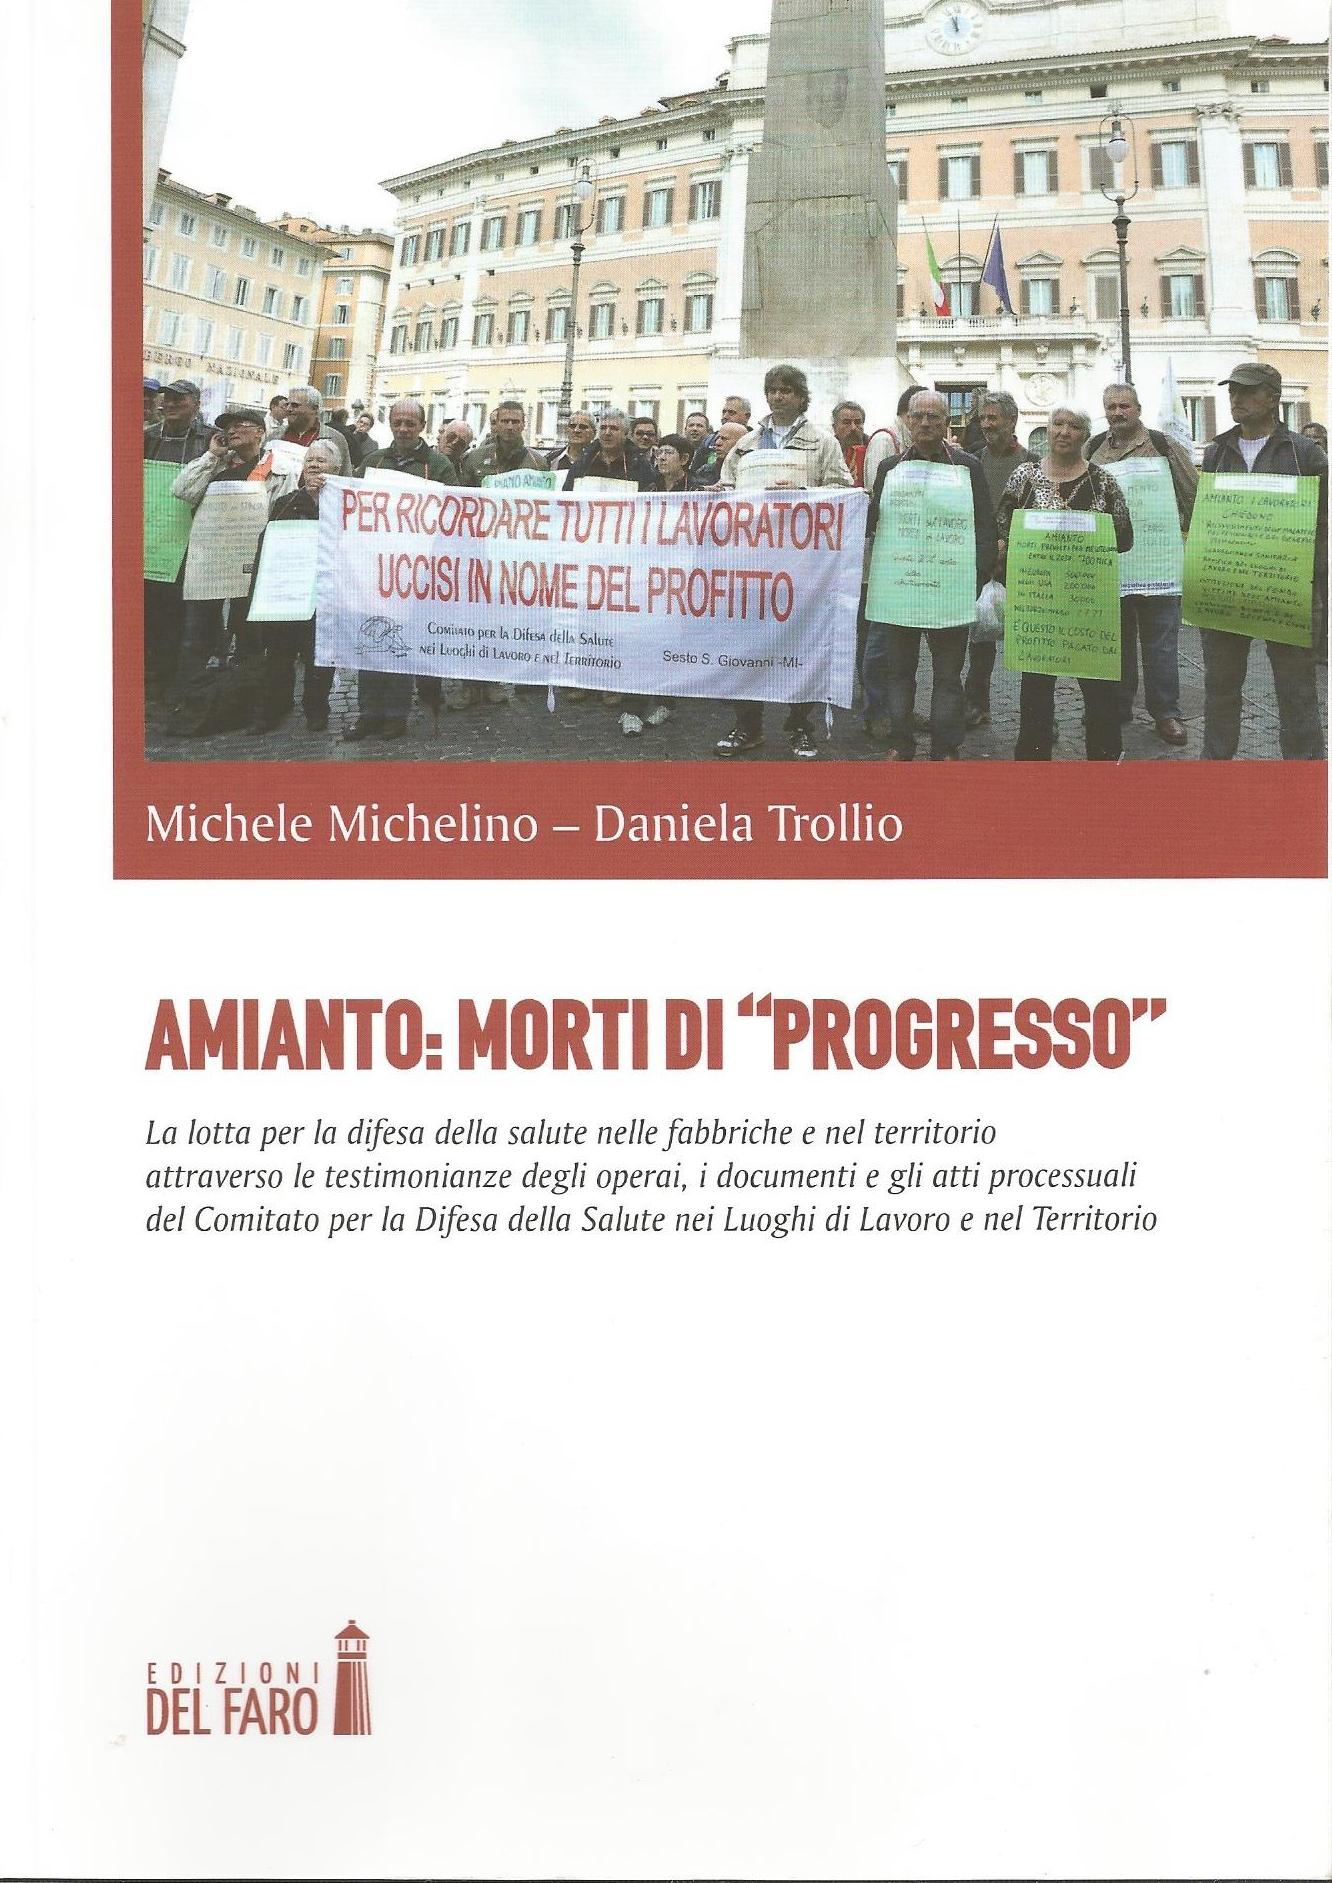 Una bella recensione di Moni Ovadia del libro Amianto: morti di “progresso” pubblicata sul quotidiano il manifesto di oggi 22 settembre 2016.